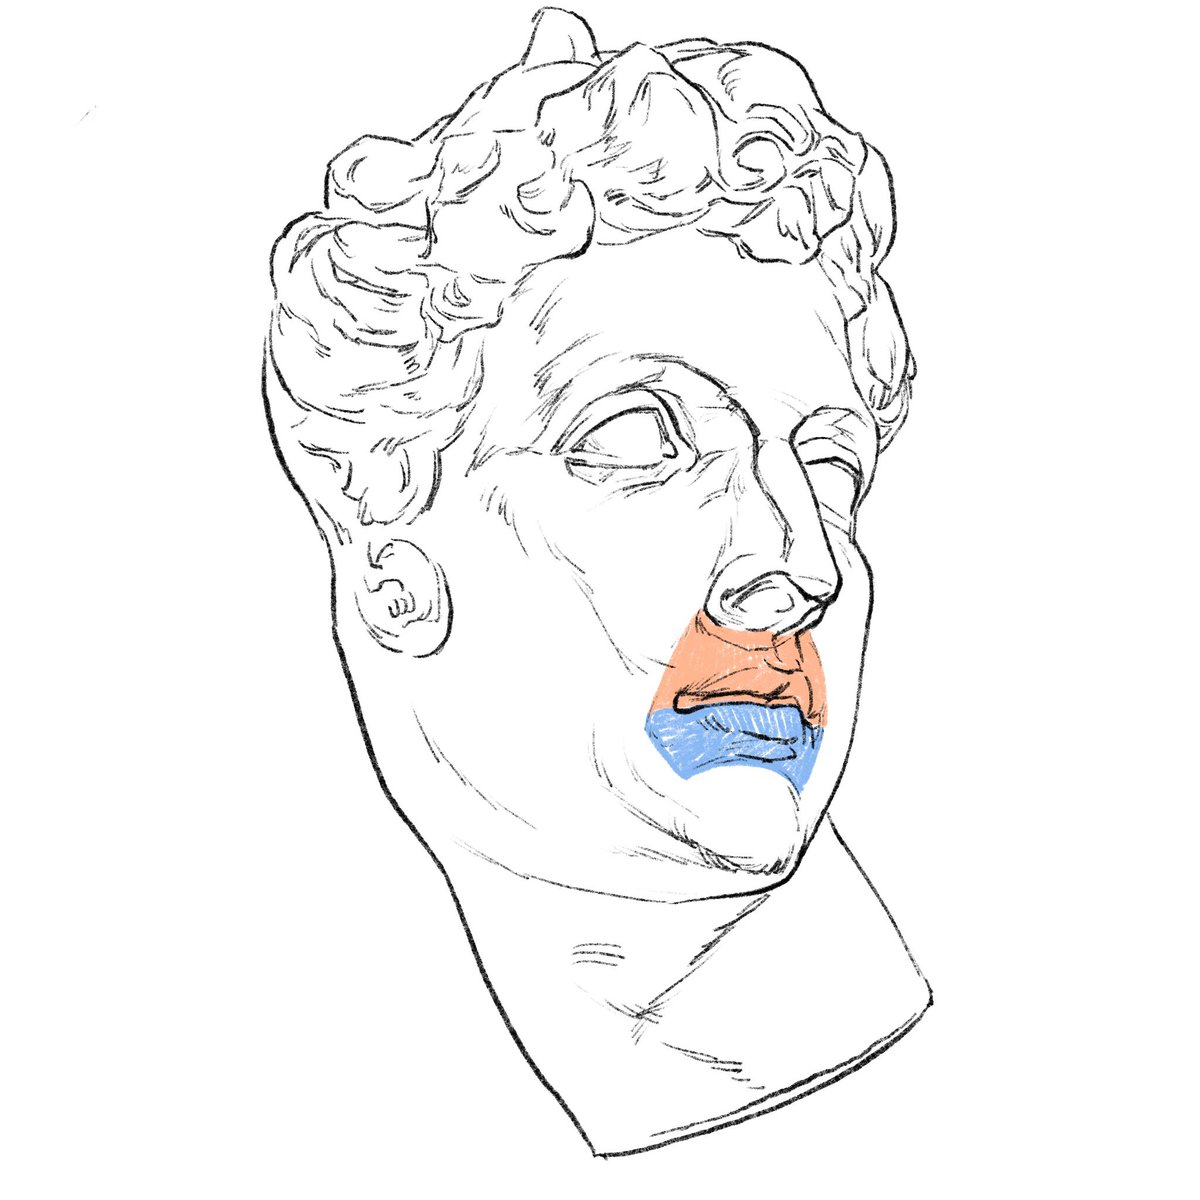 「唇の体表区分はイメージと異なる。鼻下、ほうれい線(鼻唇溝と頬唇溝)、顎と唇の間の」|伊豆の美術解剖学者のイラスト